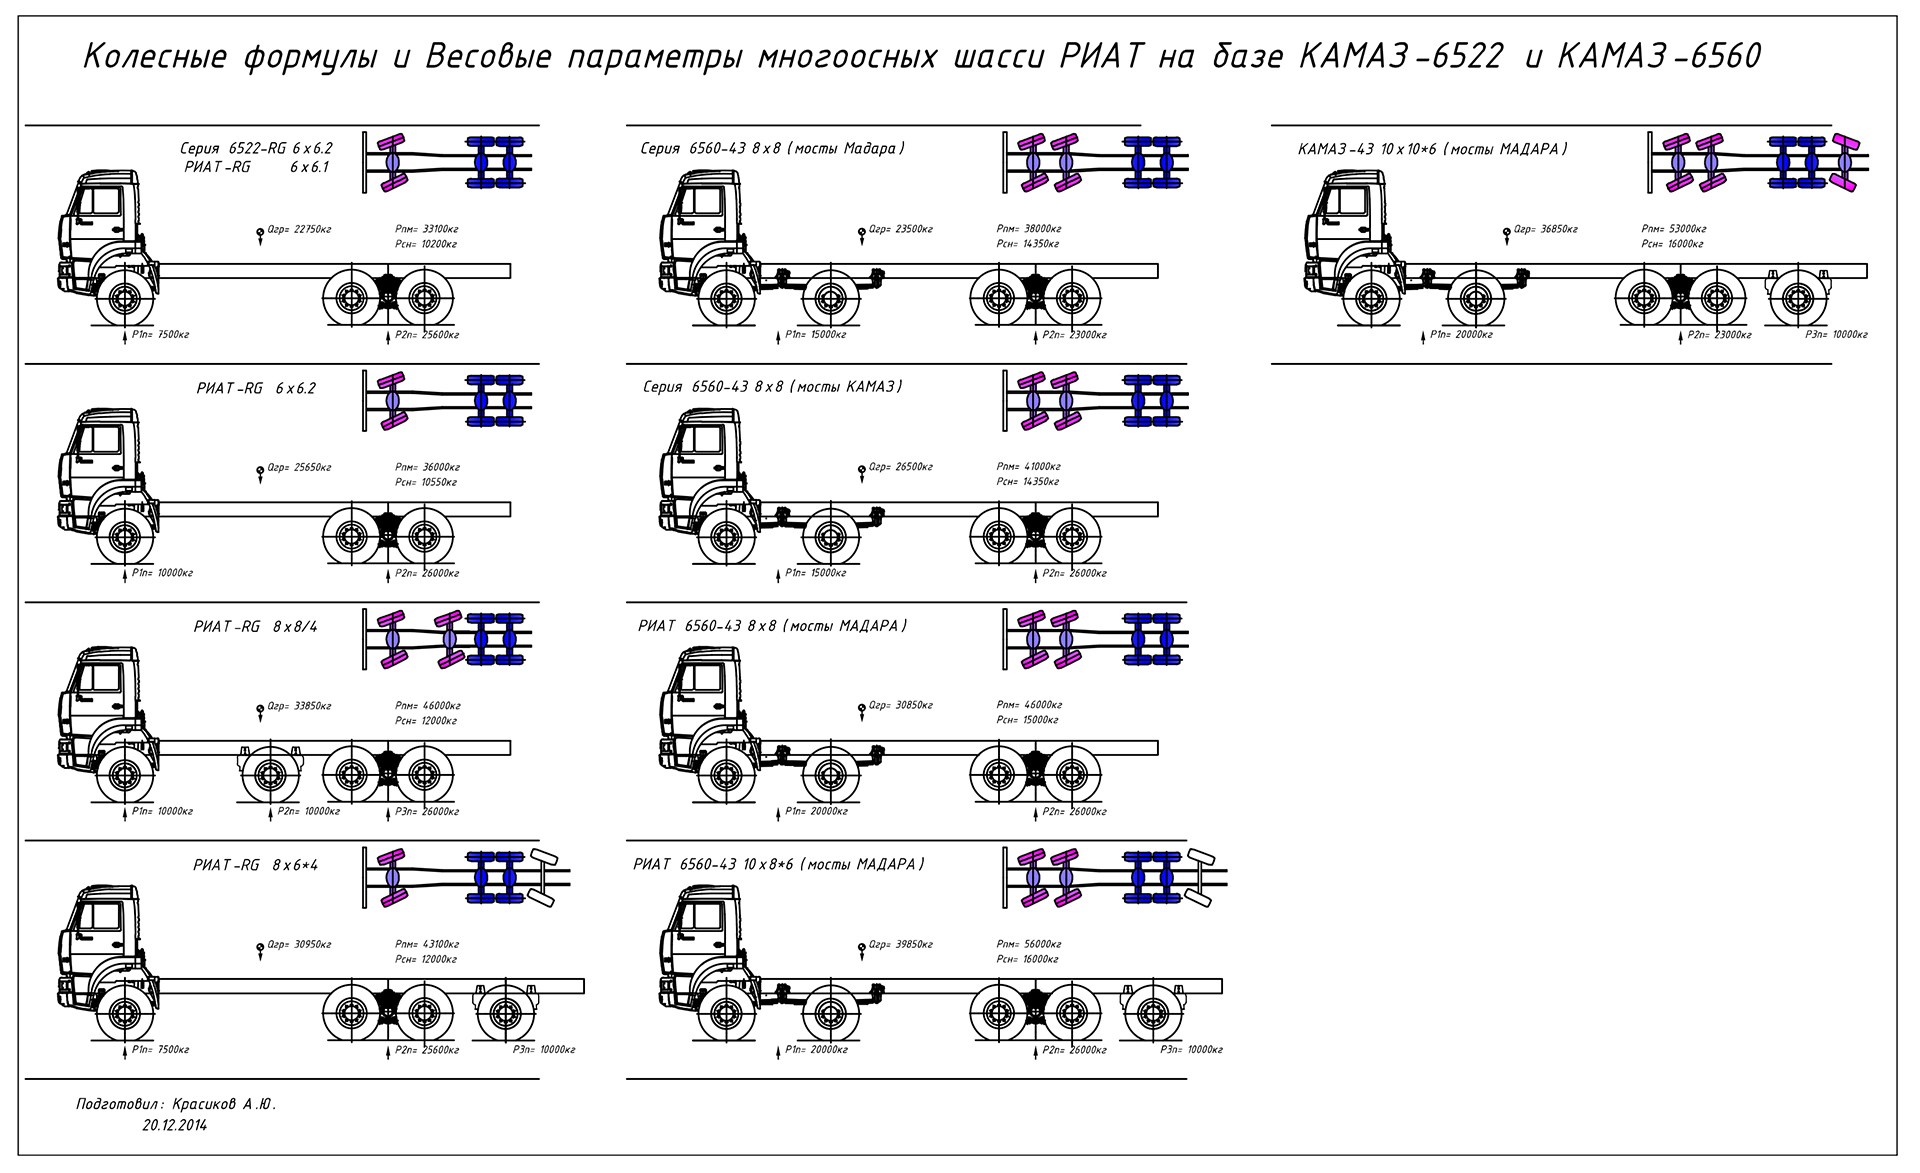 Многоосные шасси РИАТ на базе КАМАЗ 6522 и КАМАЗ 6560. Колесные формулы